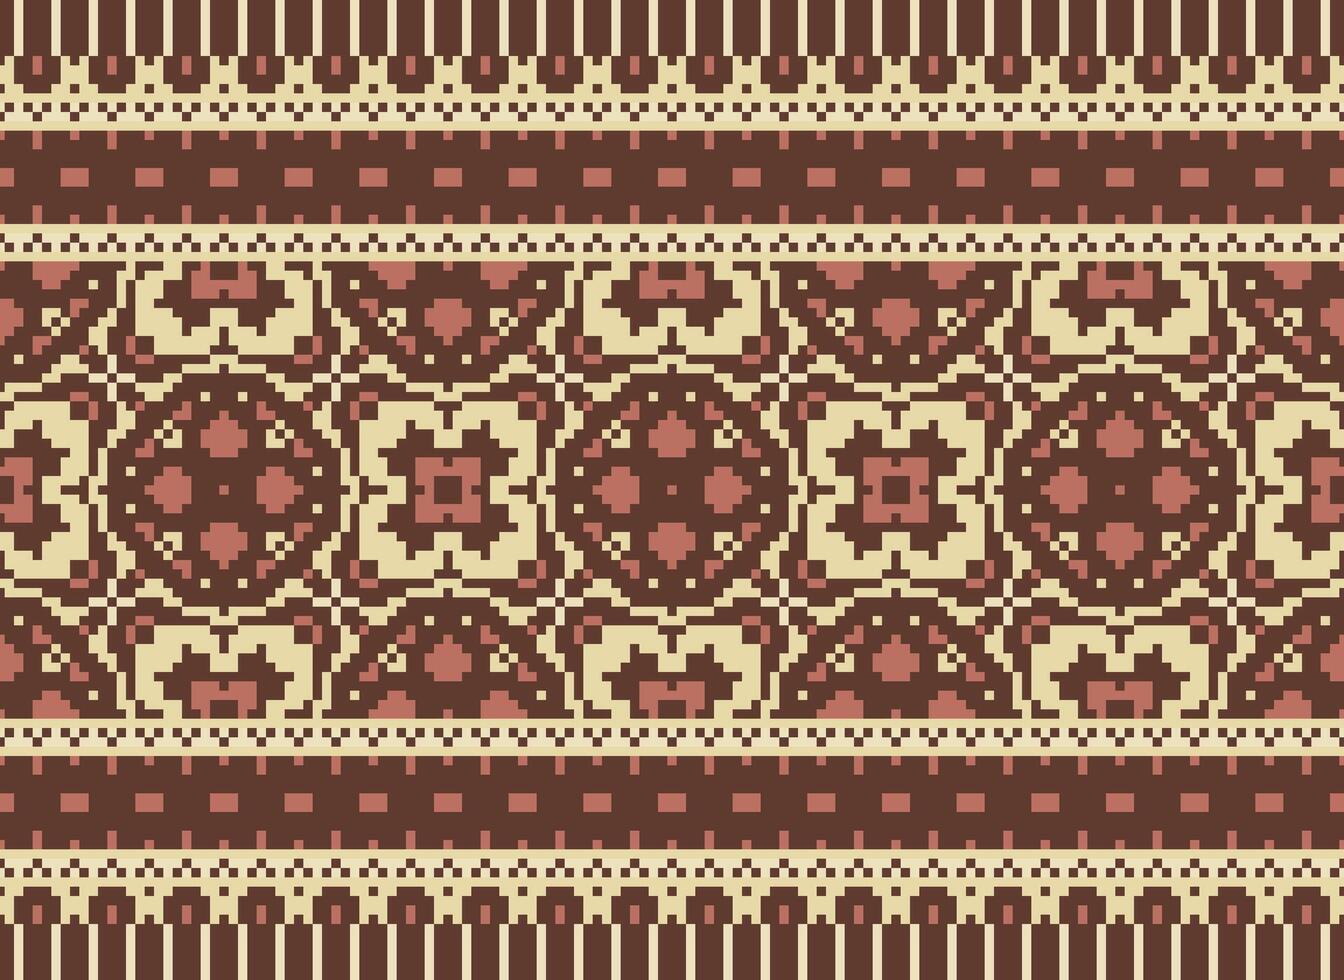 pixel annate attraversare punto tradizionale etnico modello paisley fiore ikat sfondo astratto azteco africano indonesiano indiano senza soluzione di continuità modello per tessuto Stampa stoffa vestito tappeto le tende e sarong vettore